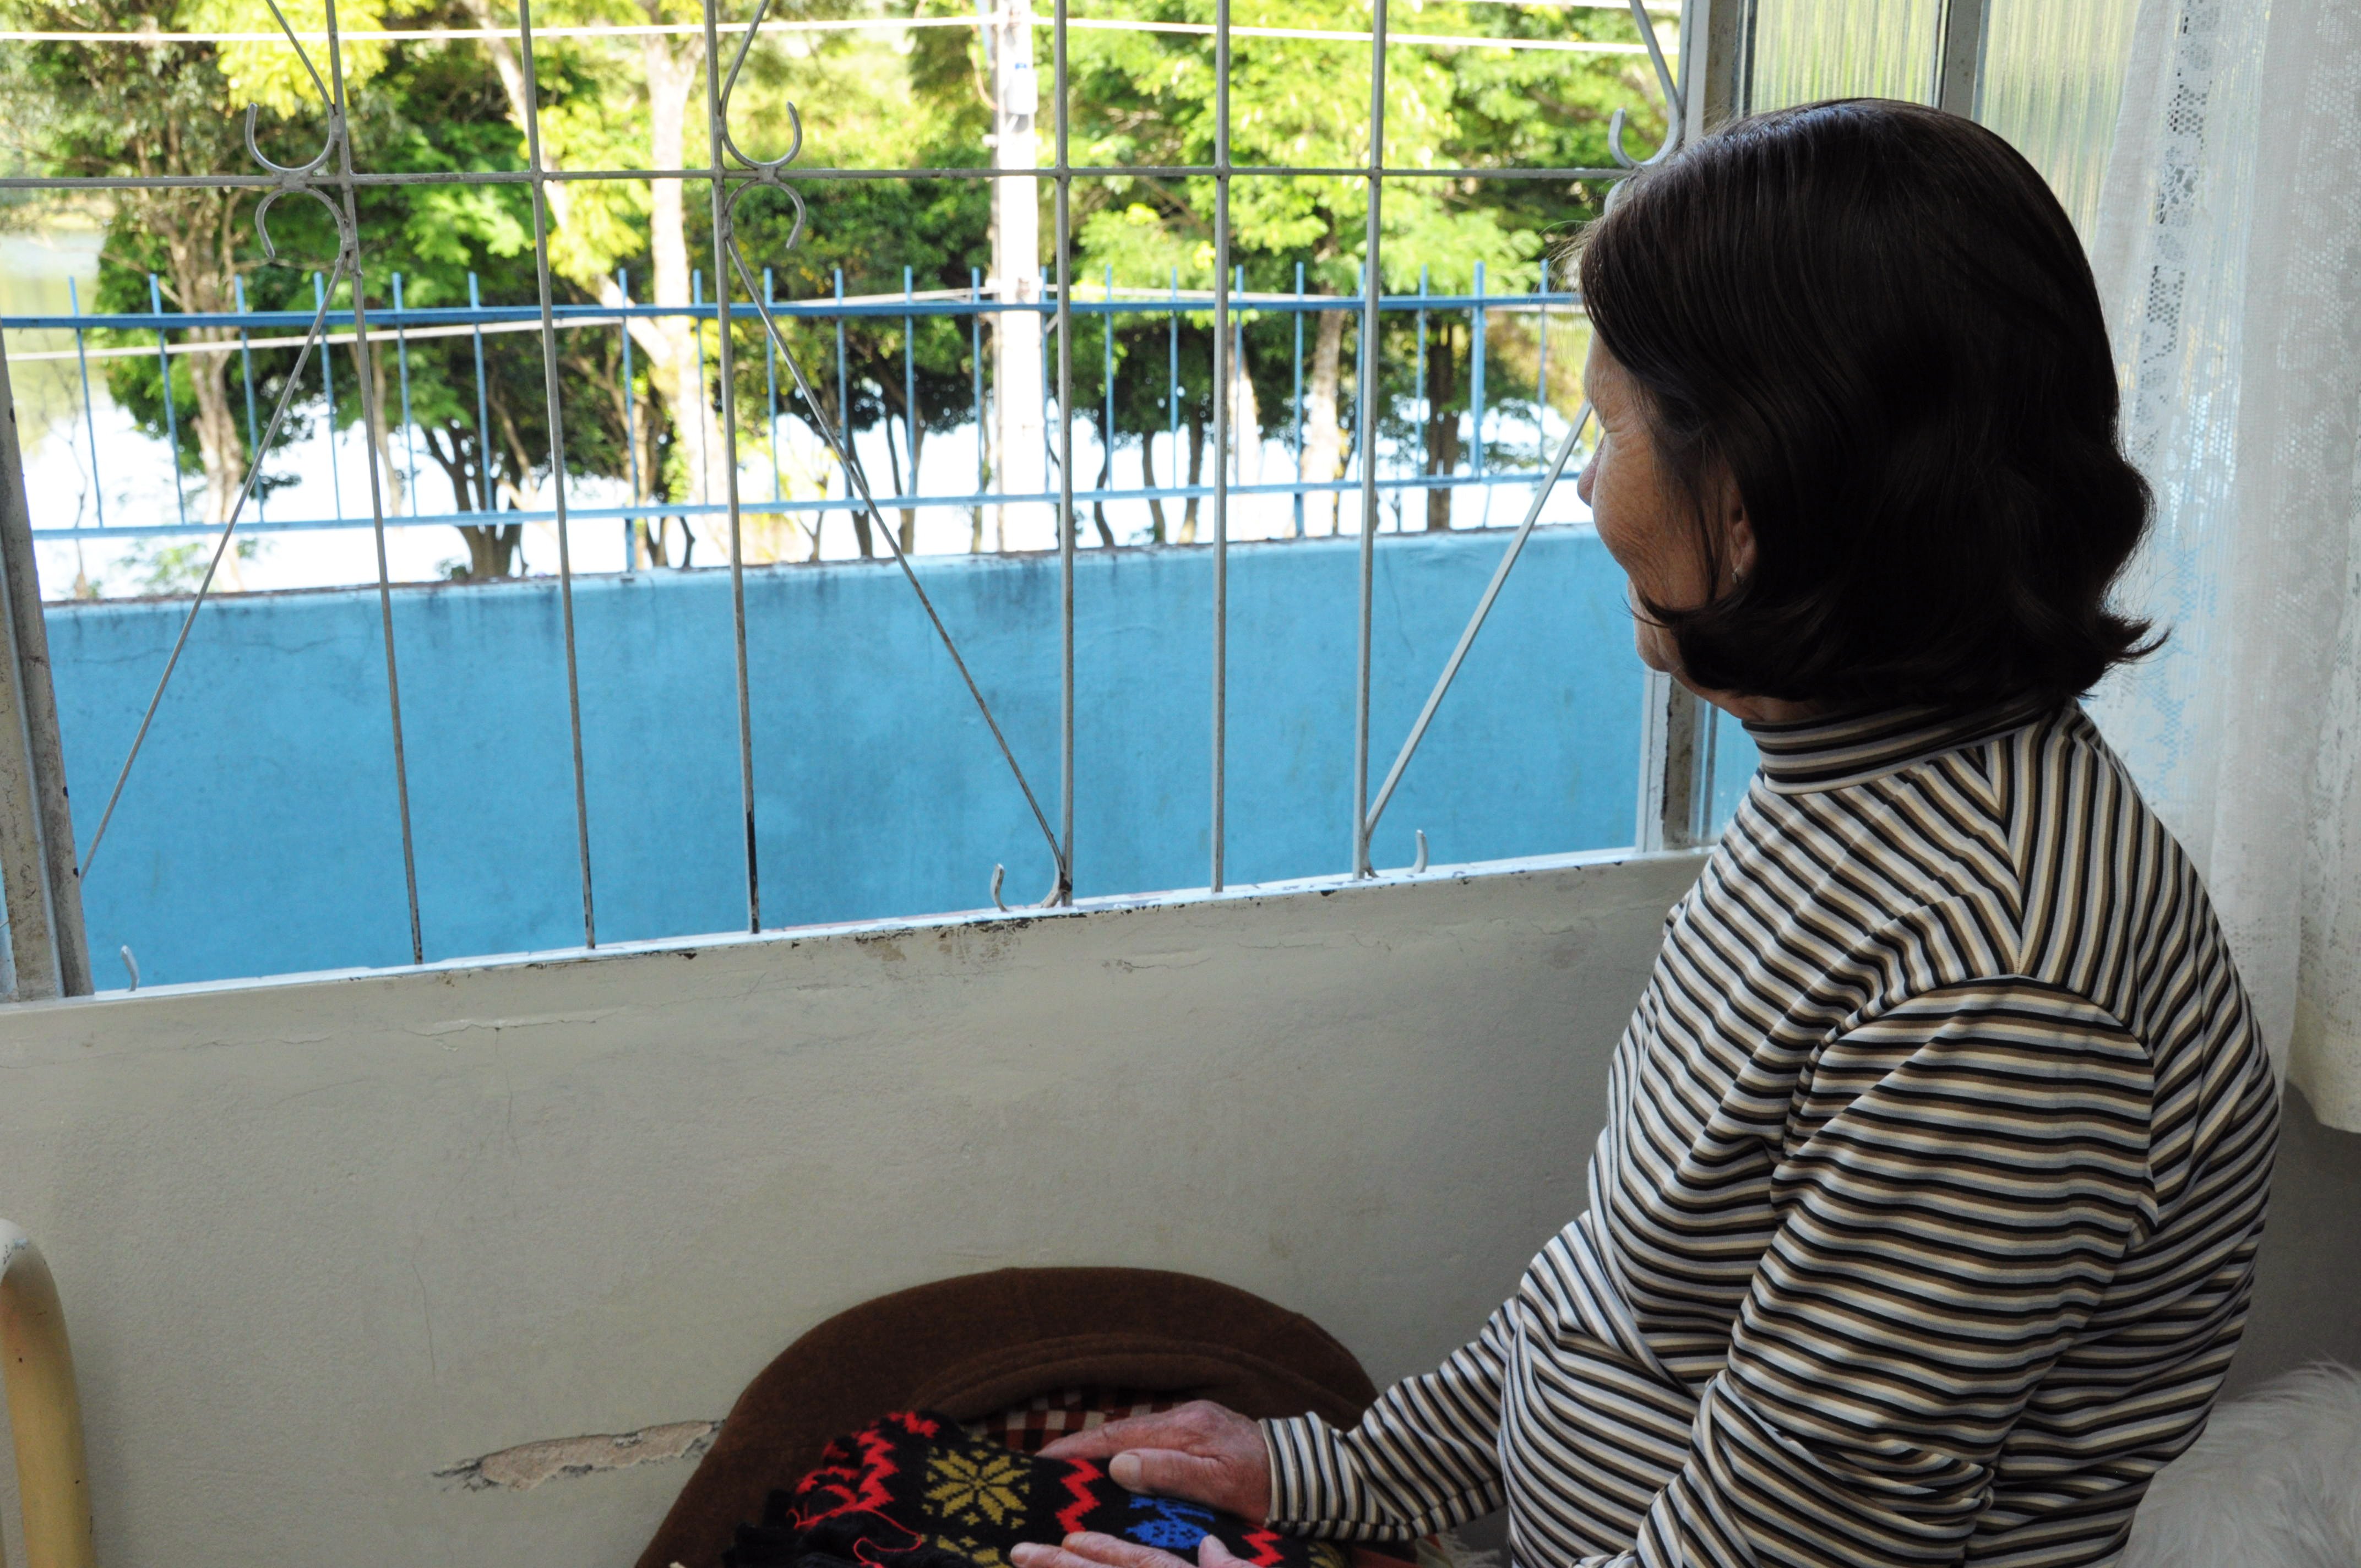 É na janela que Rosa Francisco, 64 anos, passa seus domingos: “Fico olhando as pessoas caminhar” - Abandono também é uma forma de violência